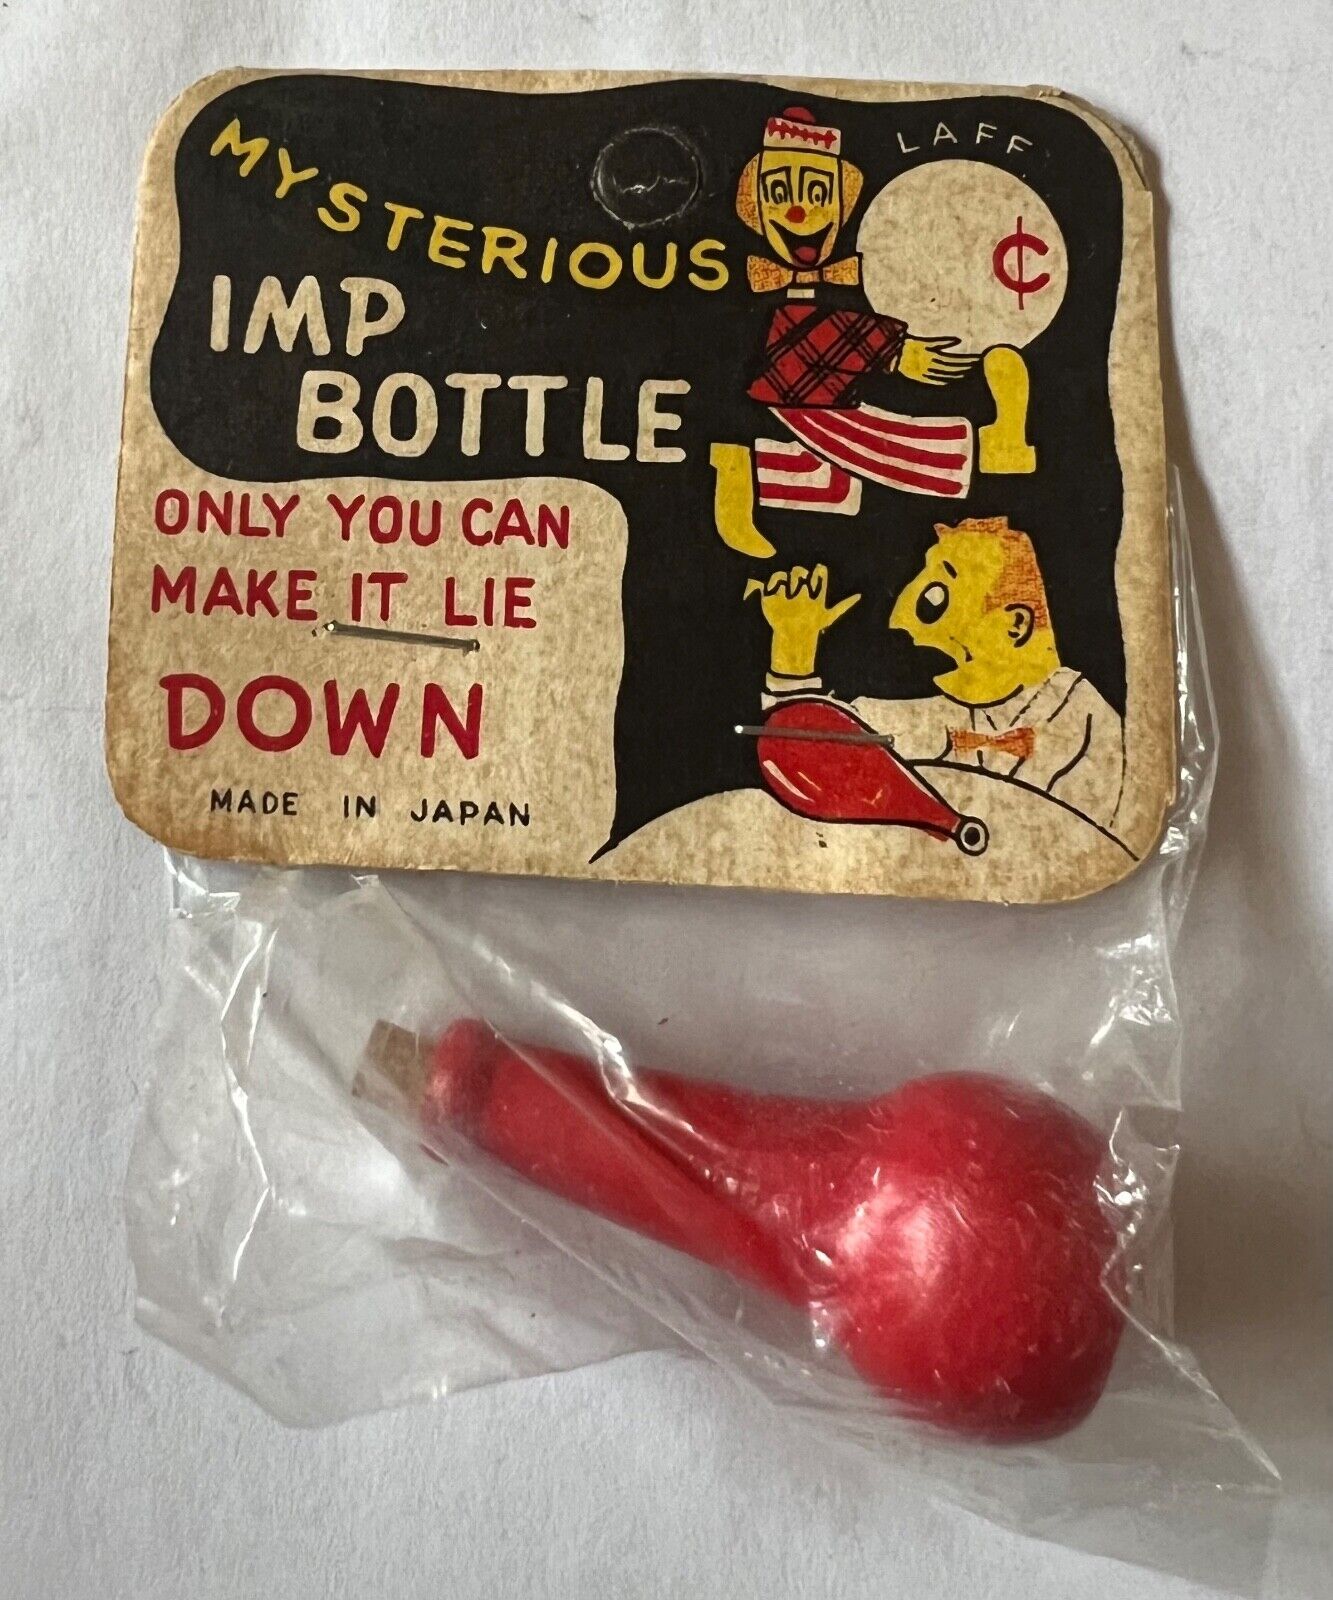 Laff Mysterious Imp Bottle Novelty Magic Trick Dimestore 1950s Japan Vintage